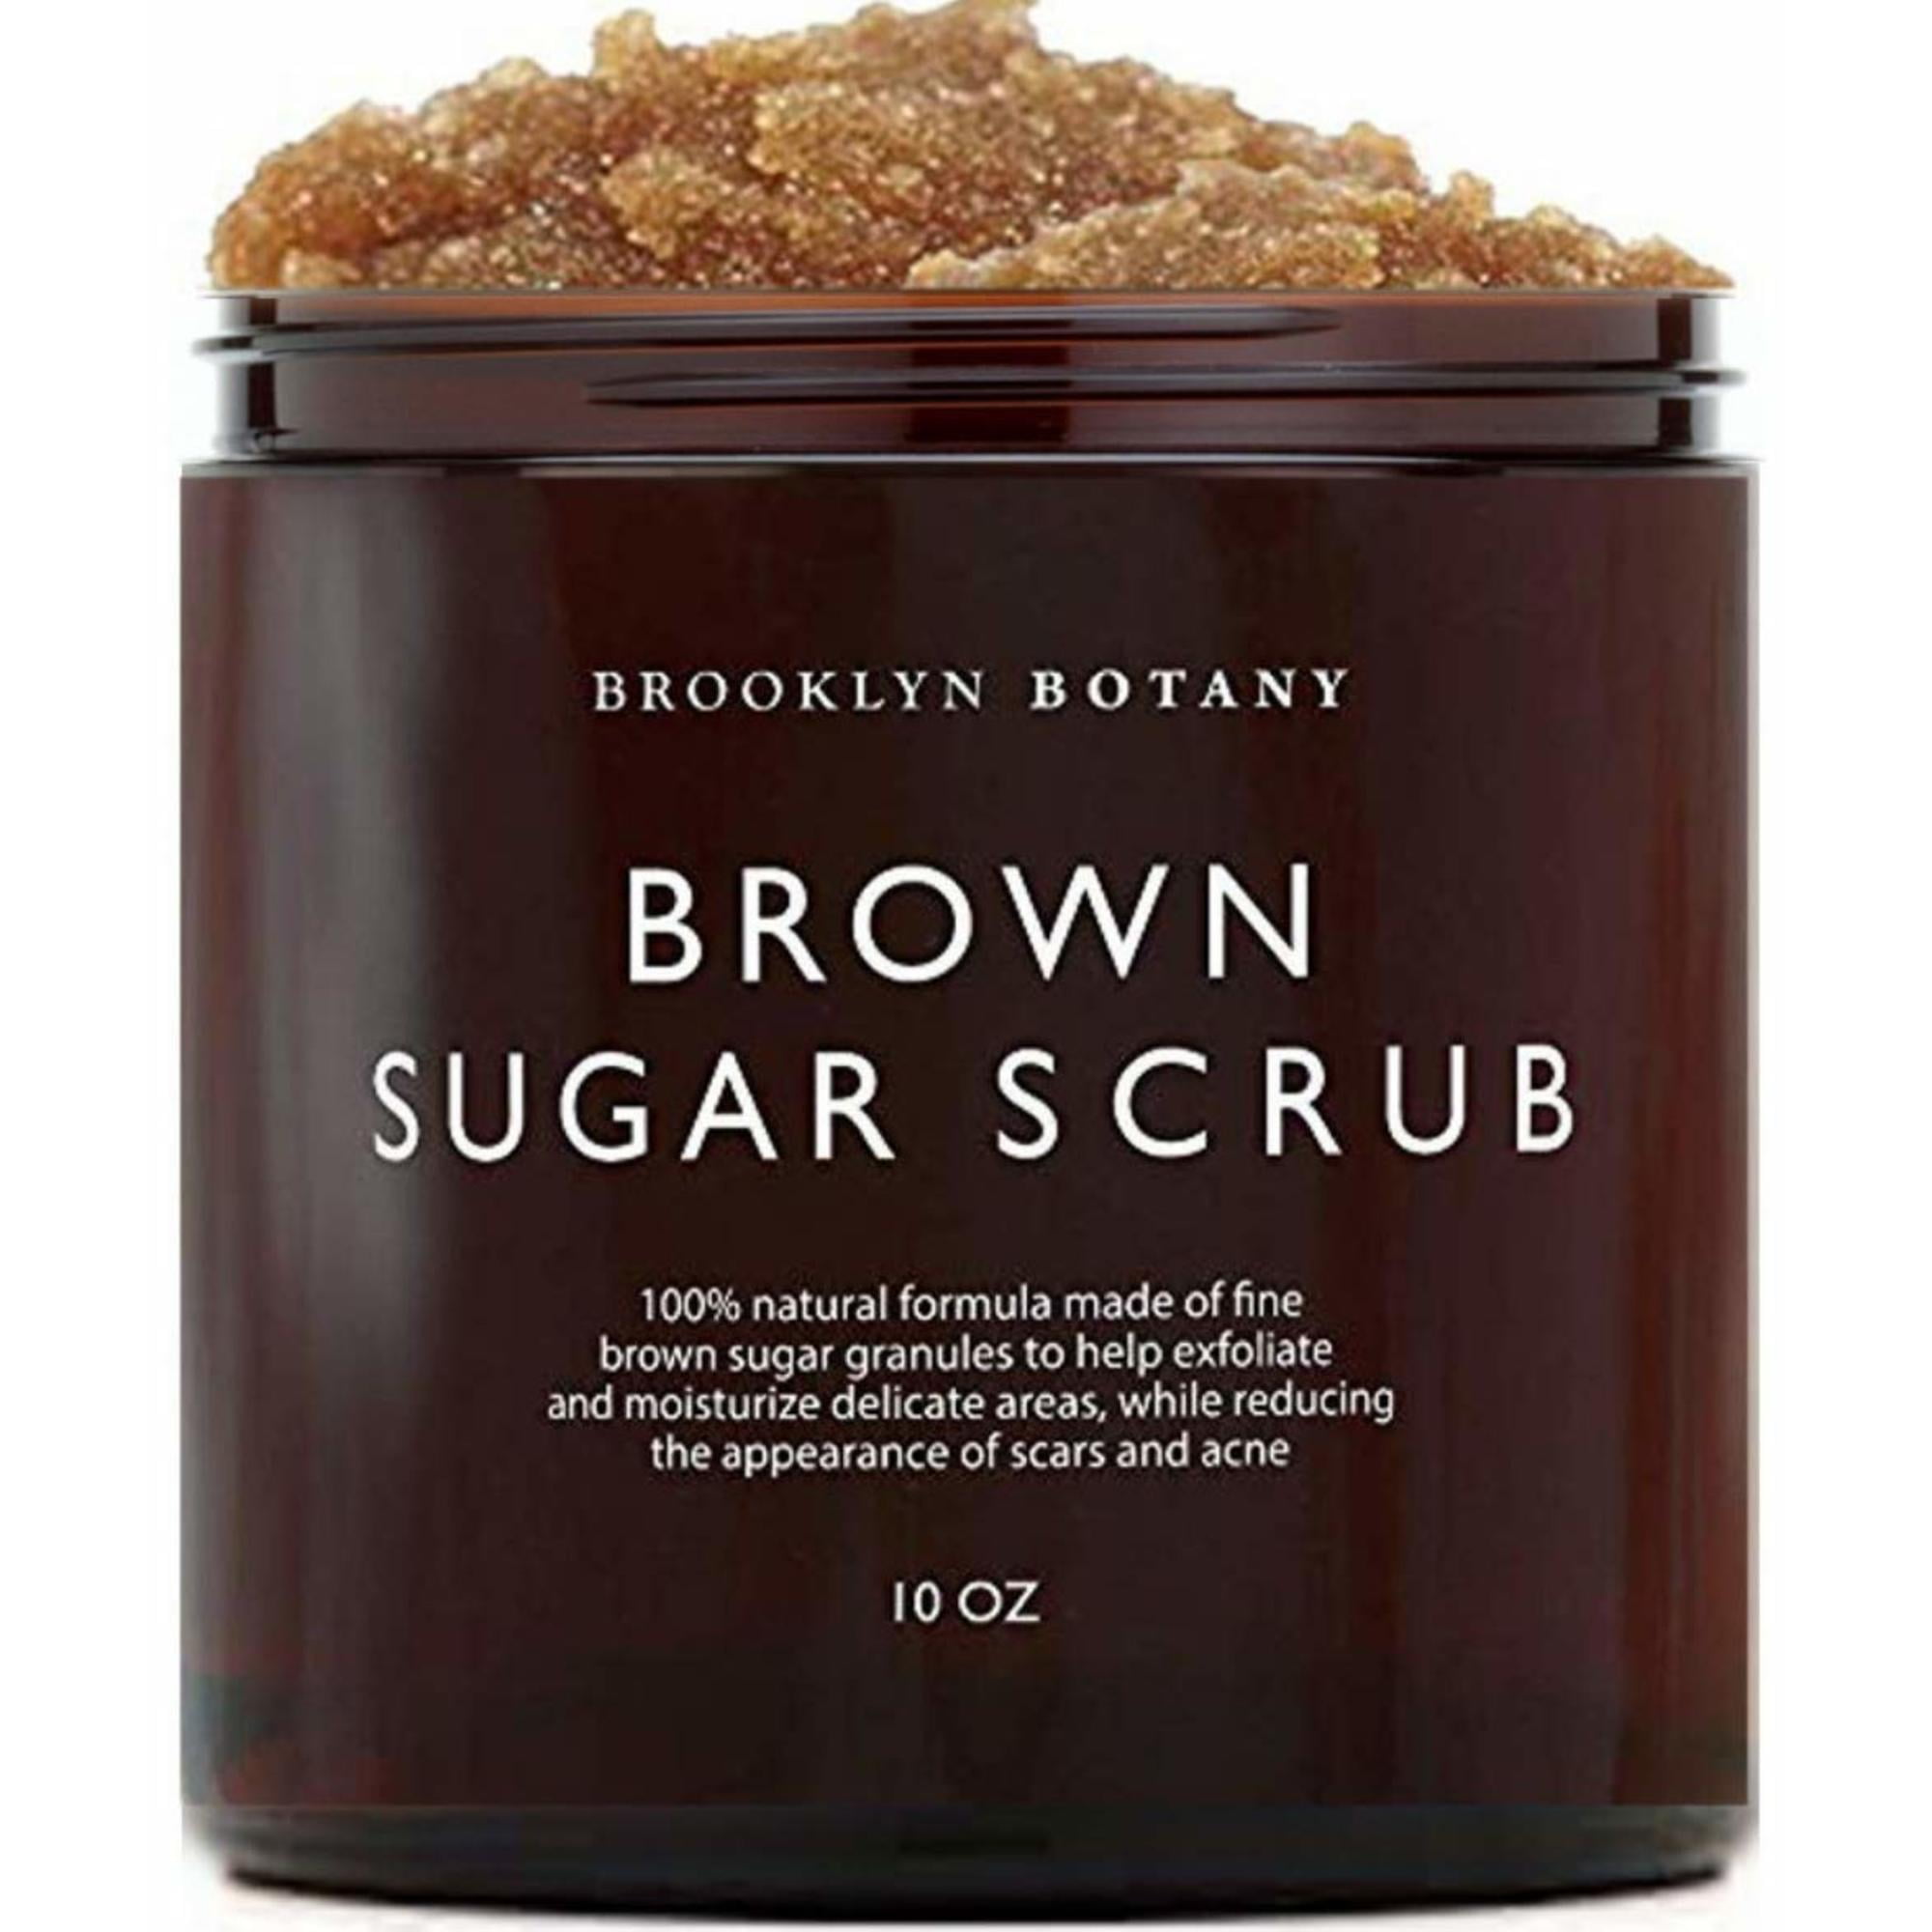 Brooklyn Botany Brown Sugar Body Scrub - Great as a Face Scrub and Exfoliating Body Scrub for Acne Scars, Stretch Marks, Foot Scrub, Great Gifts for Women - 10 oz photo